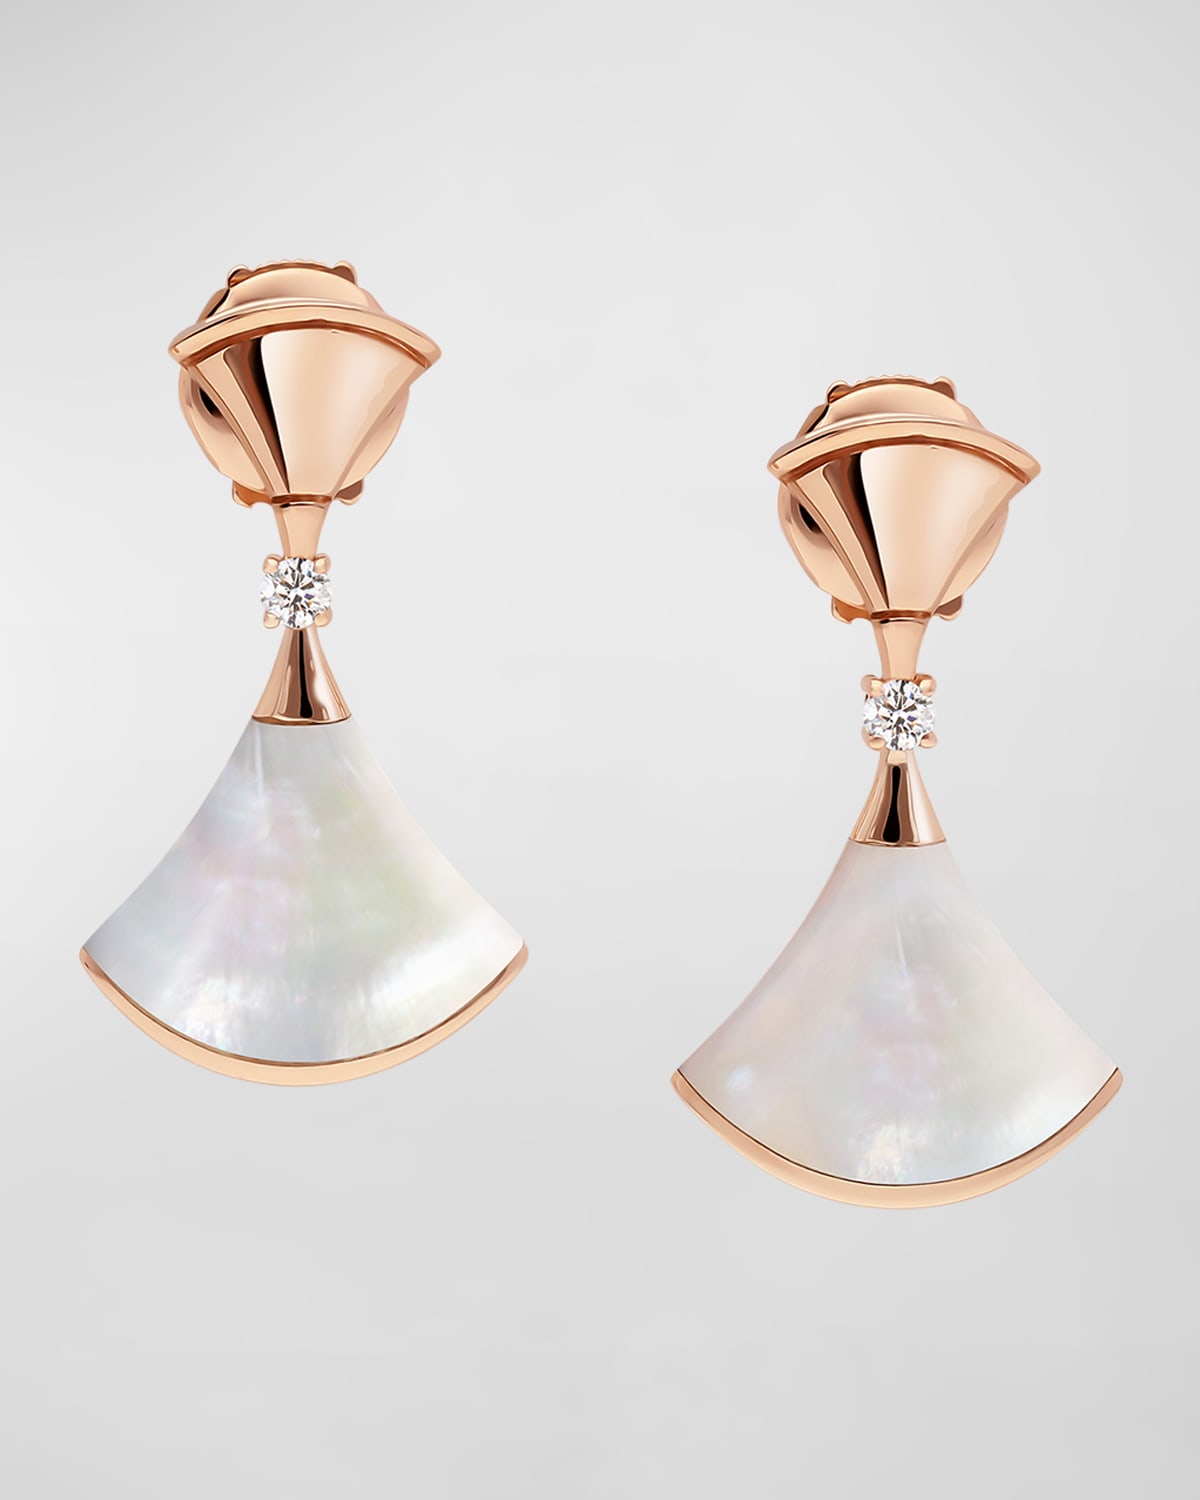 BVLGARI Divas' Dream 18k Rose Gold Mother-of-Pearl Earrings